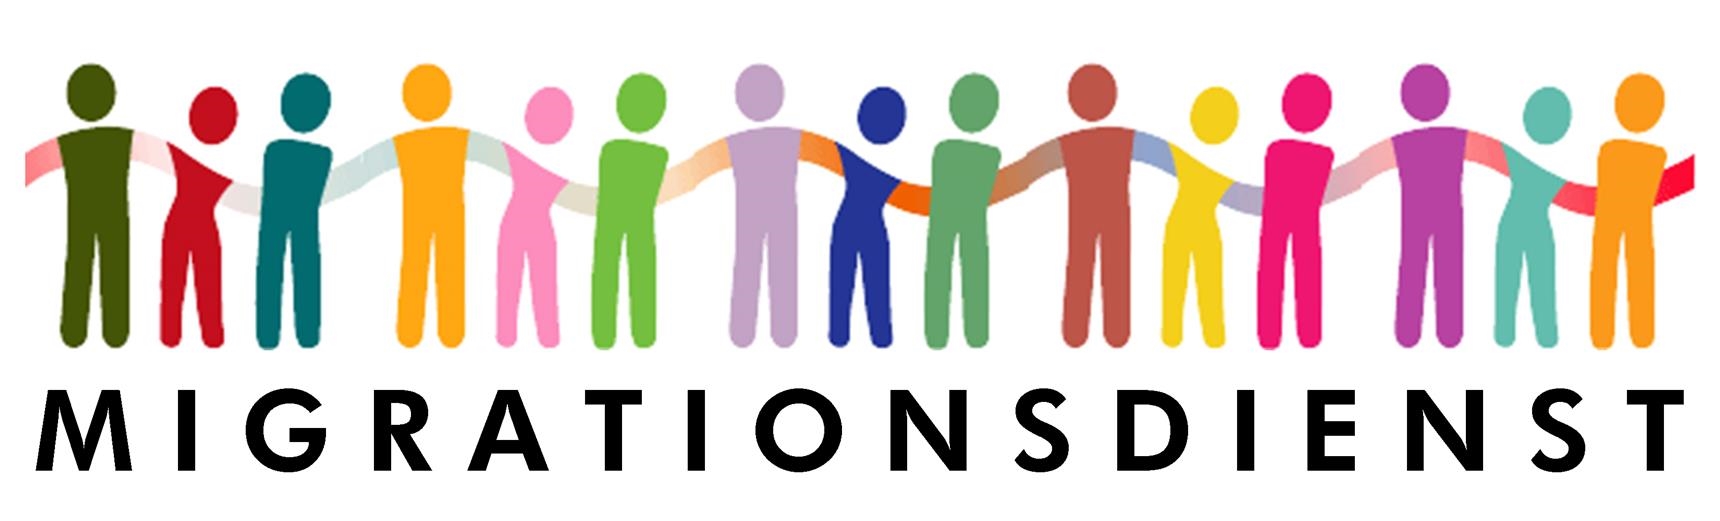 Migrationsdienst Logo